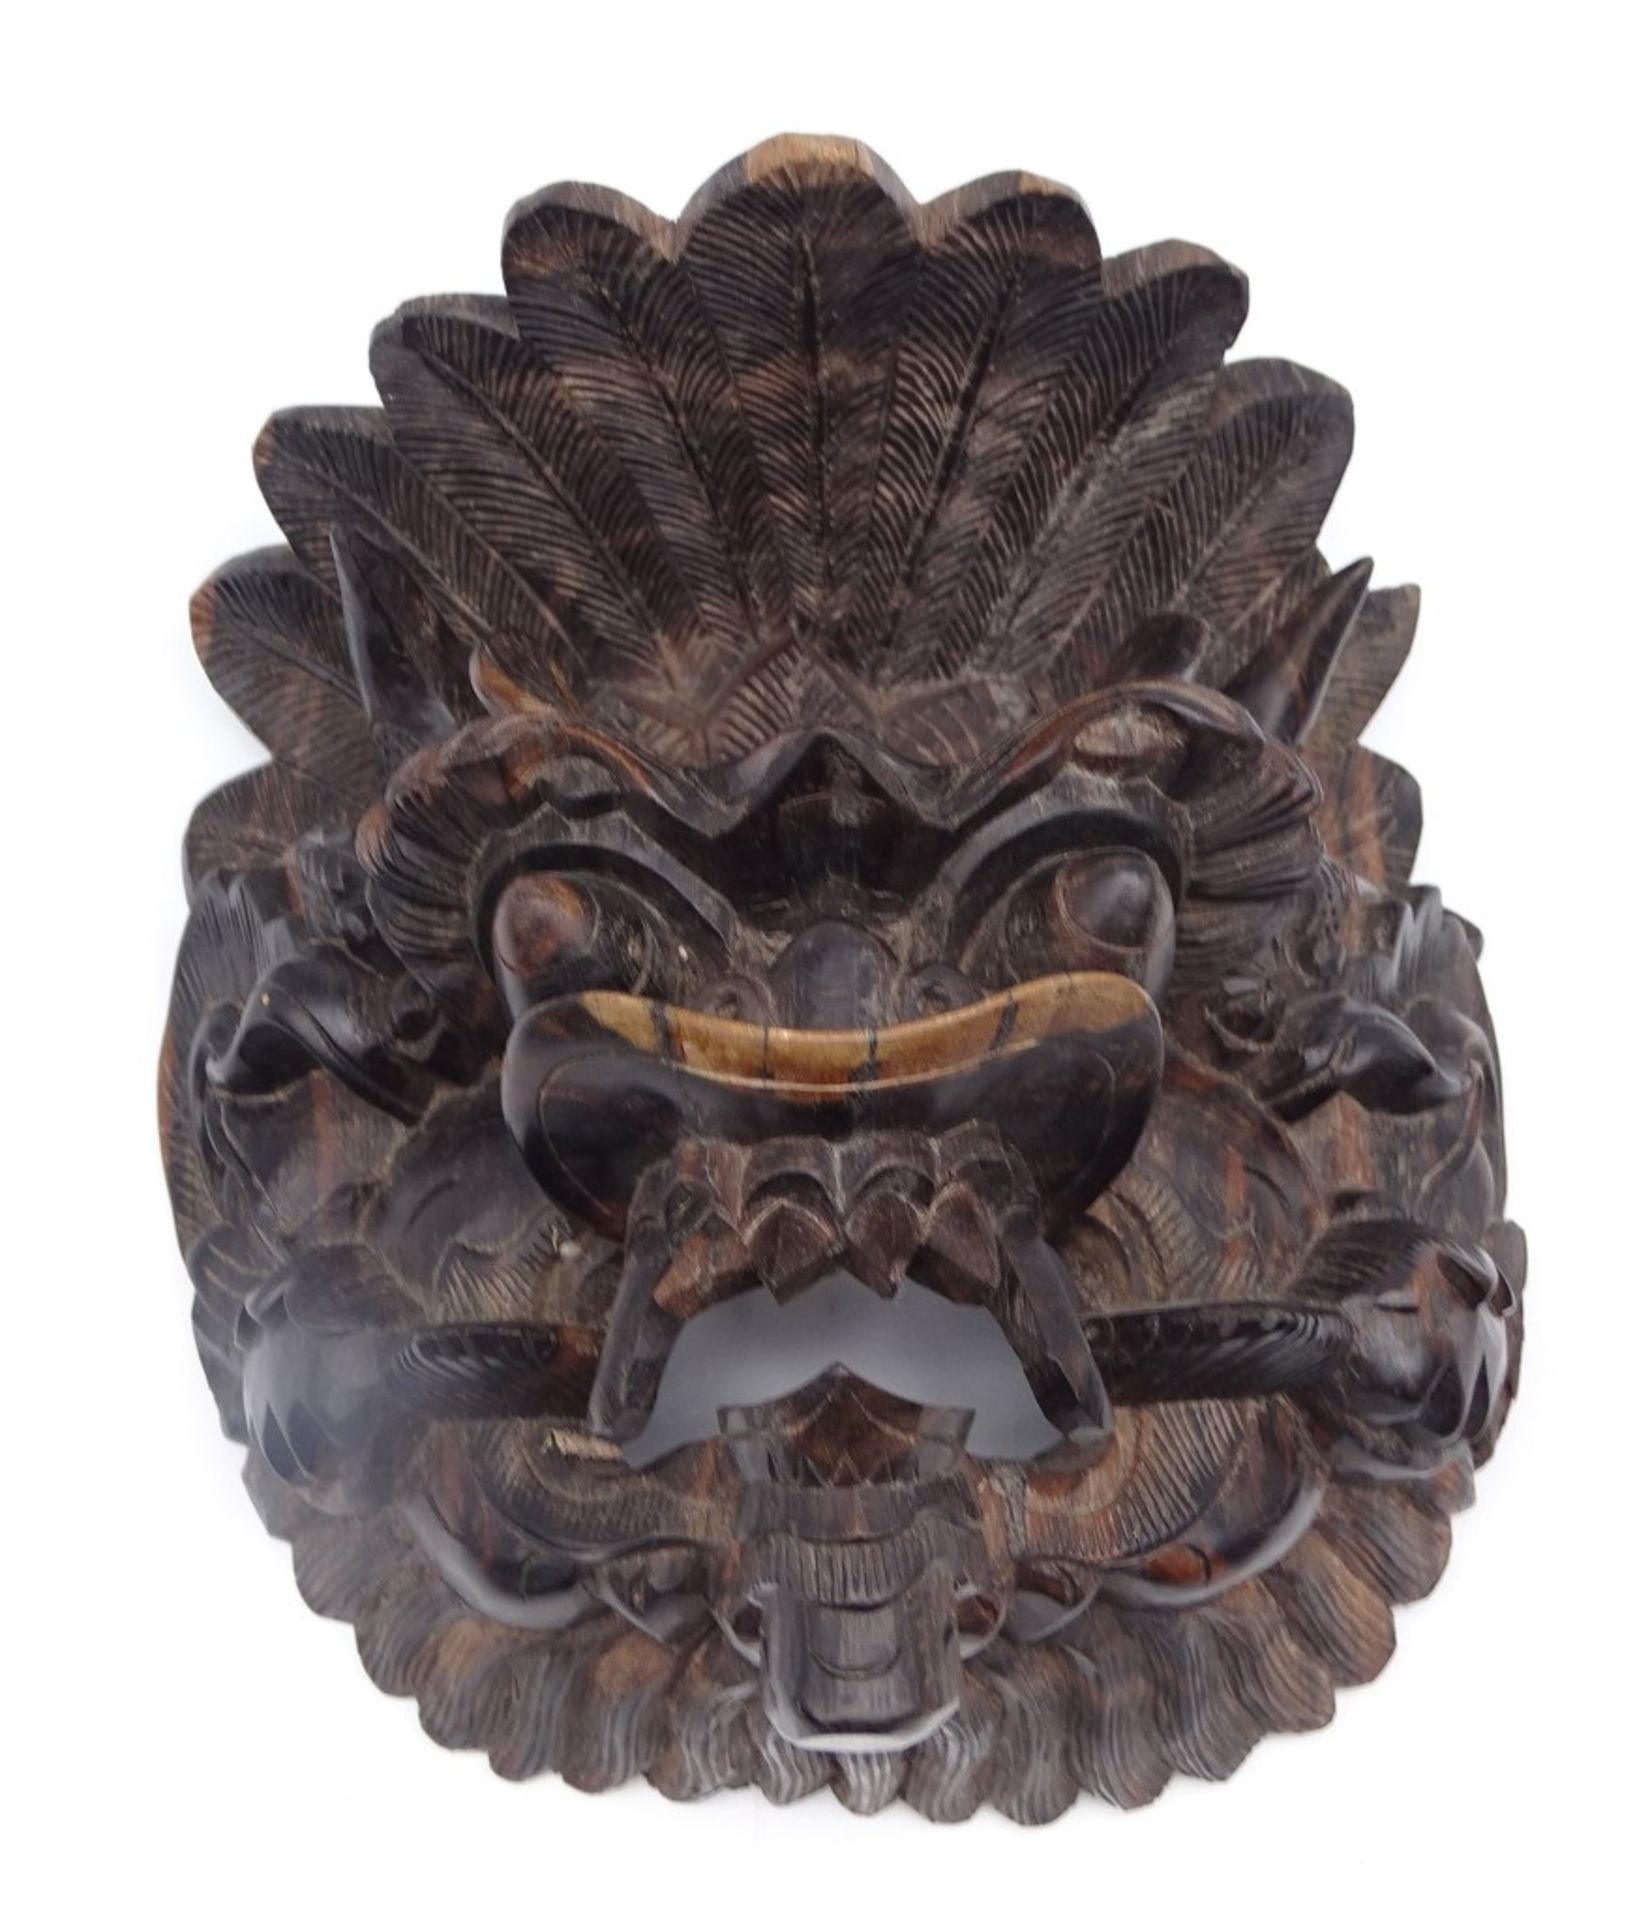 Barong-Maske aus Holz, Bali, ca. 17 x 10 x 16 cm, leichte Altersspuren, reinigungsbedürftig - Bild 3 aus 8